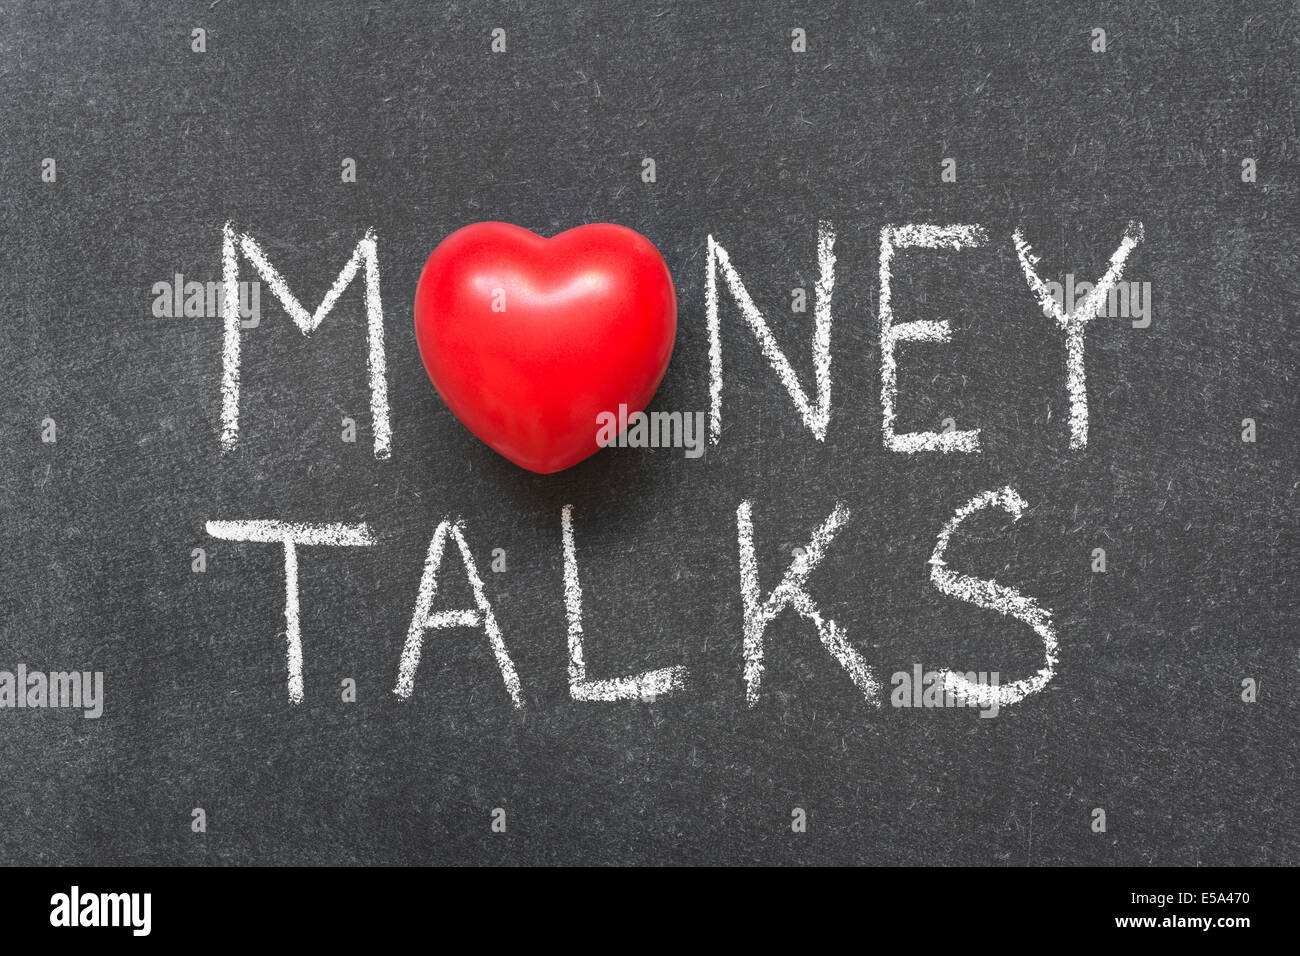 Geld spricht Ausdruck handschriftlich auf Tafel mit Herzsymbol statt O Stockfoto